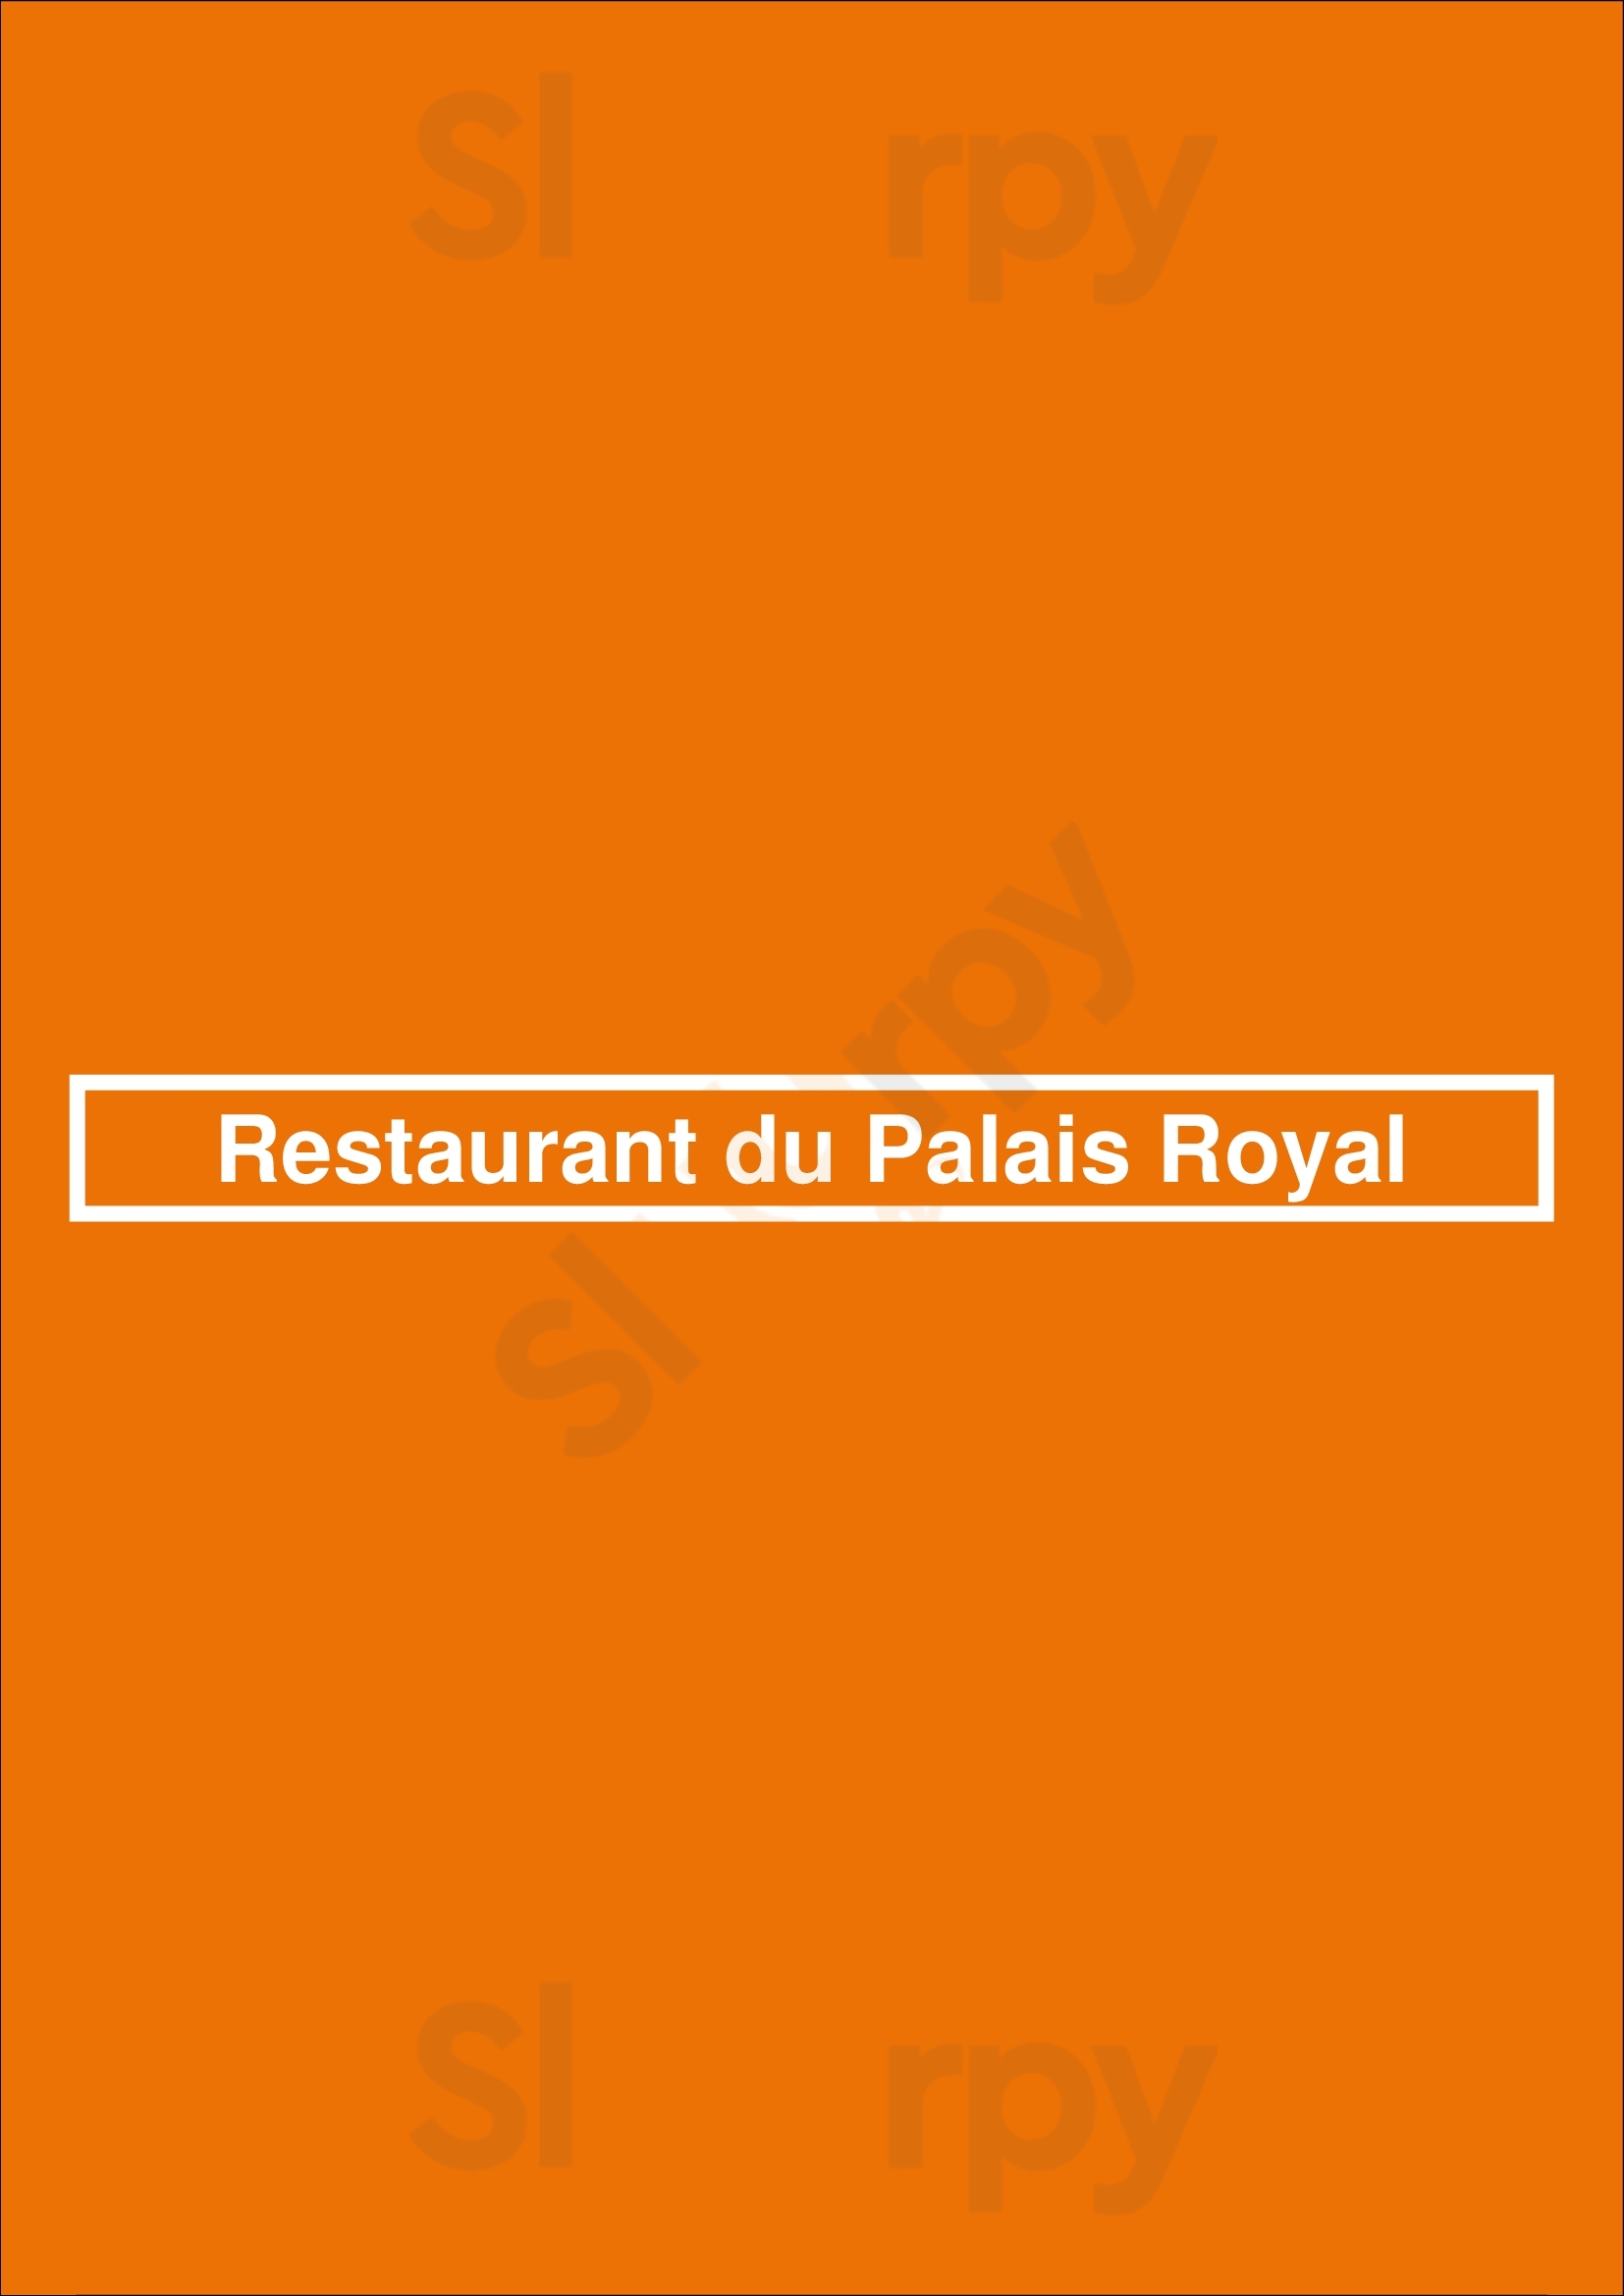 Restaurant Du Palais Royal Paris Menu - 1